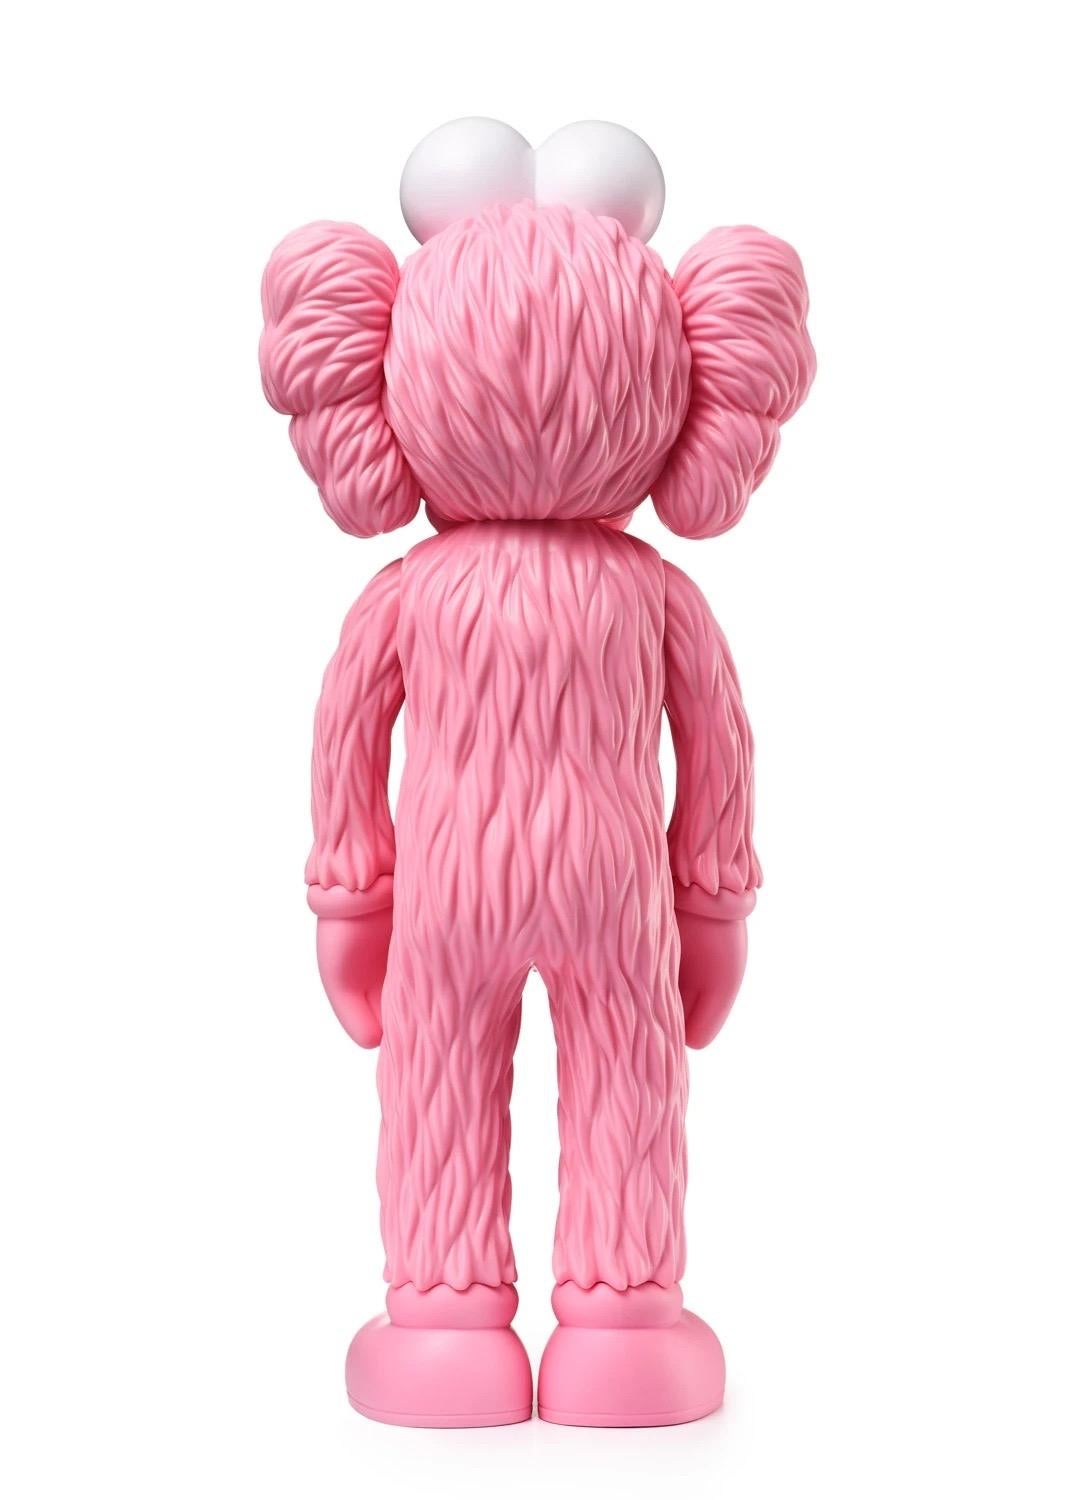 pink kaws figure